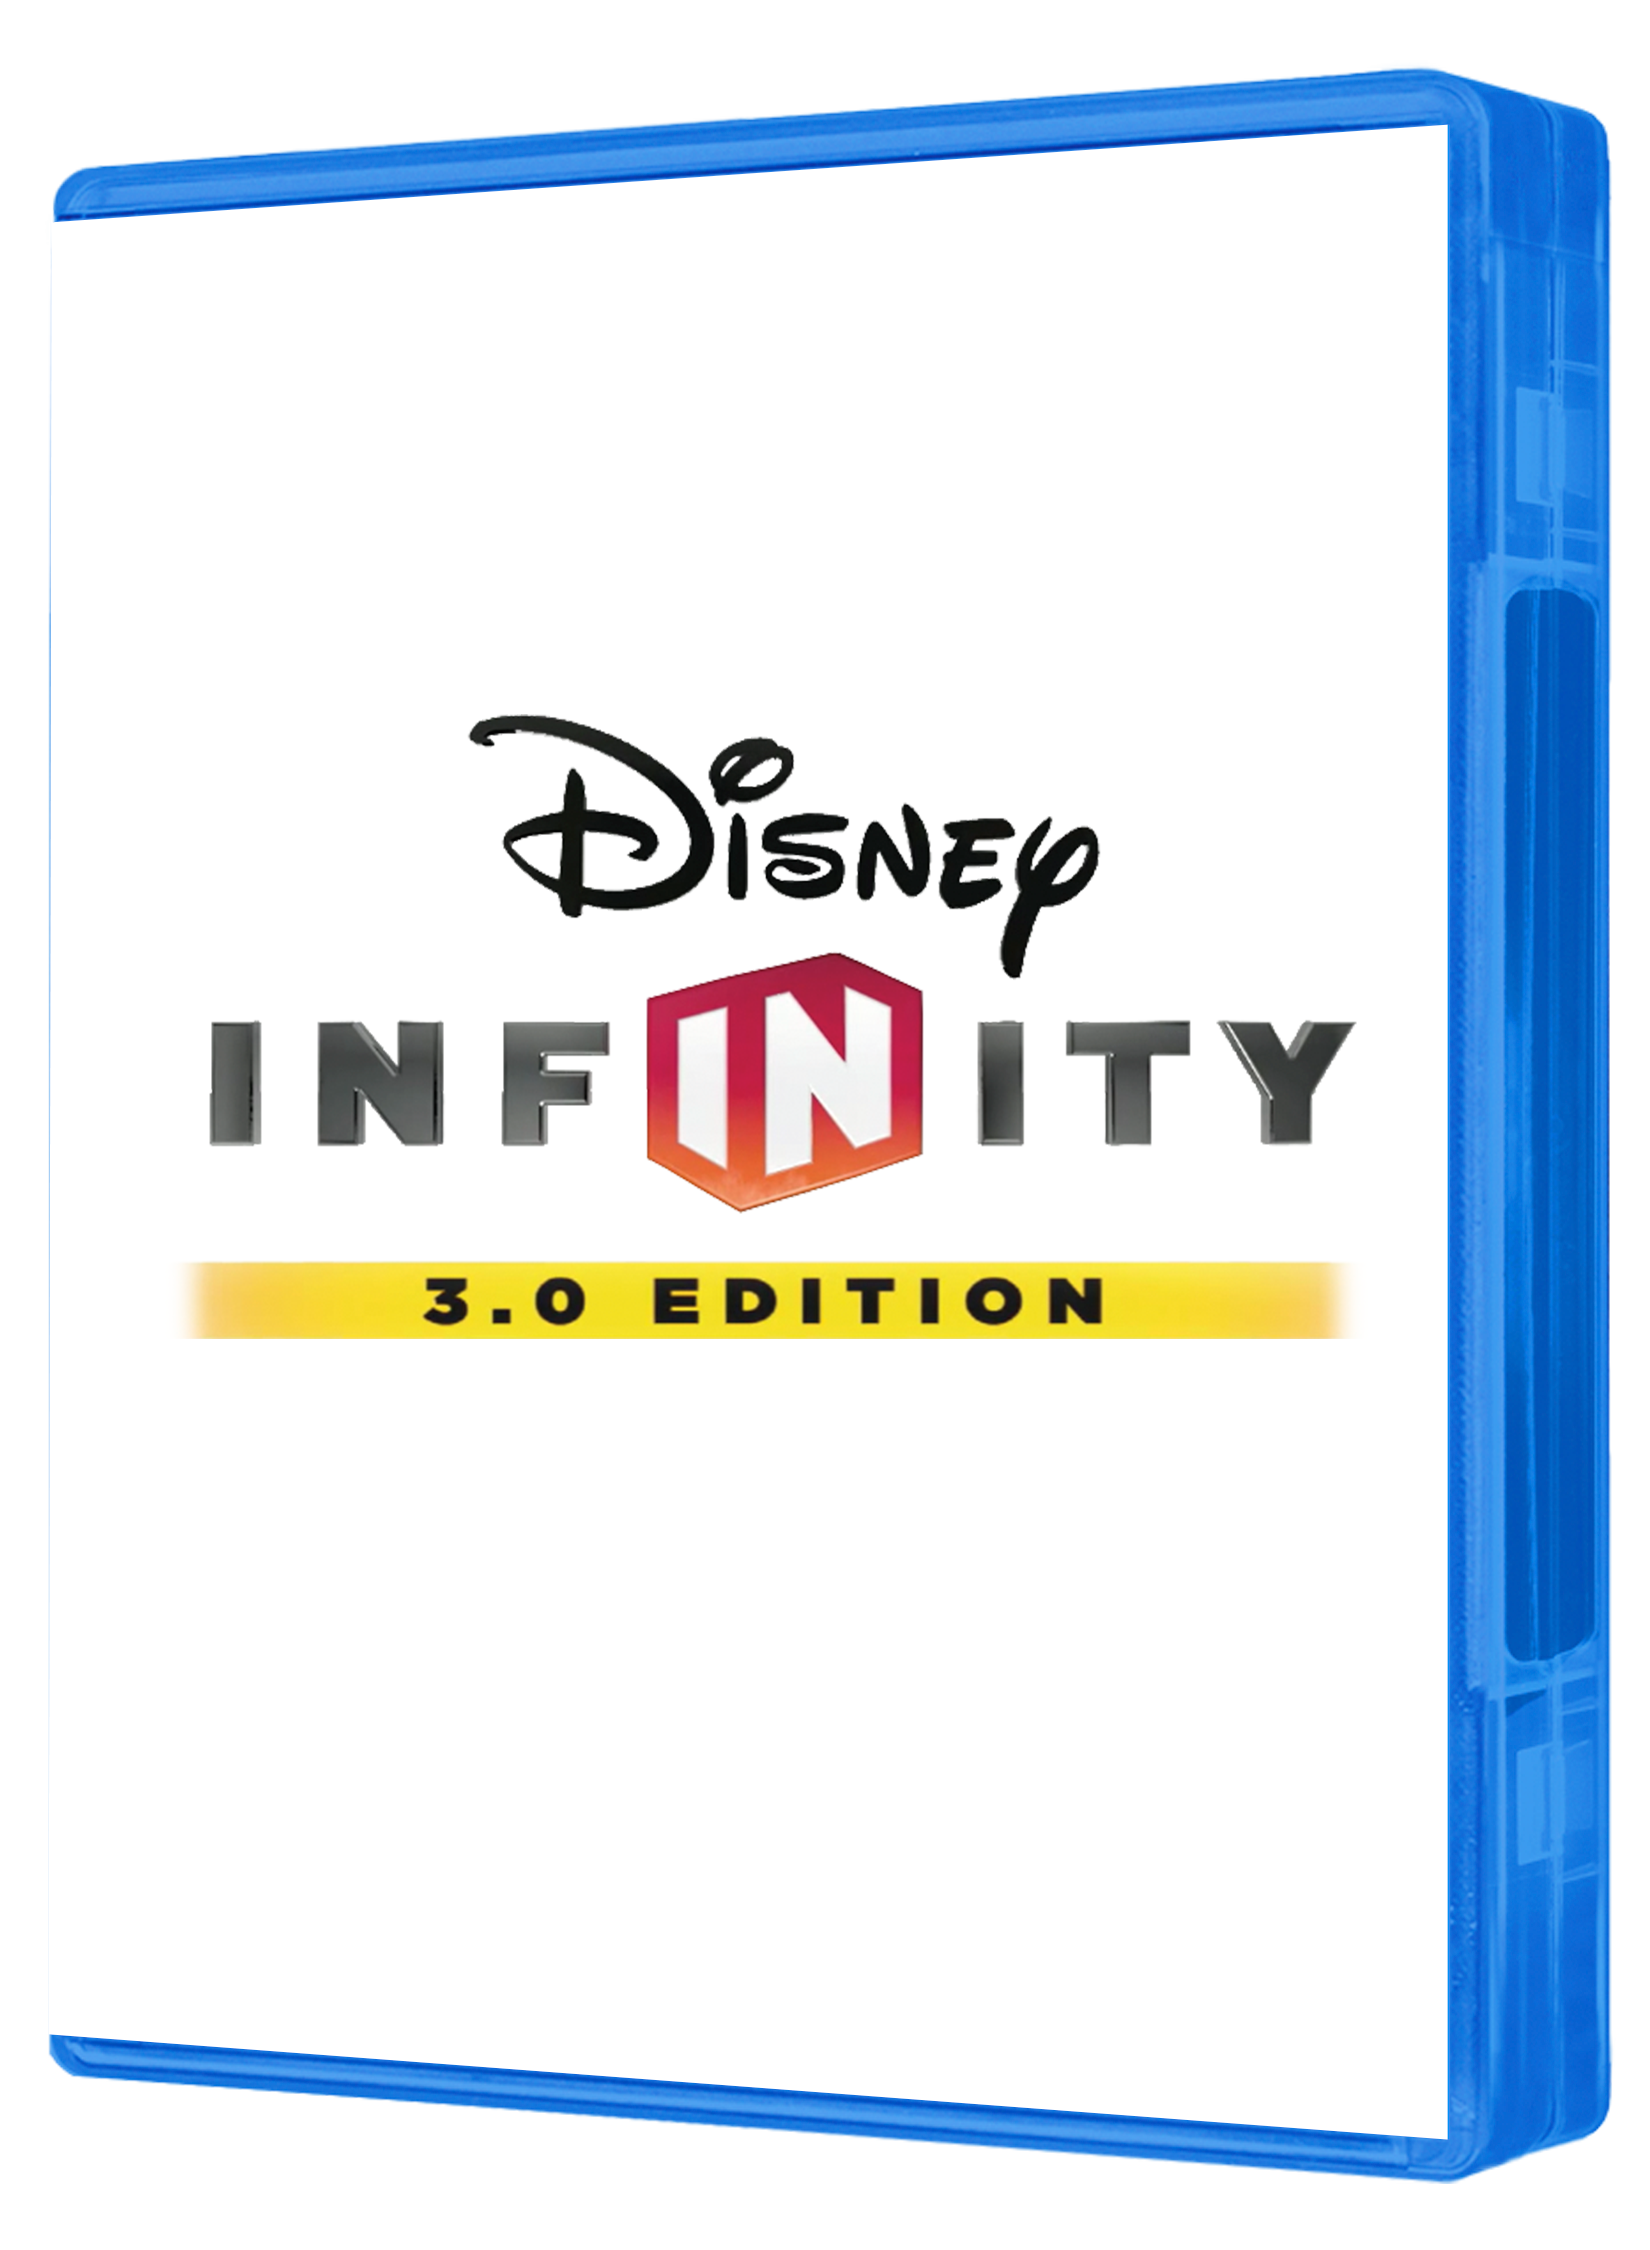 disney infinity 3.0 gamestop